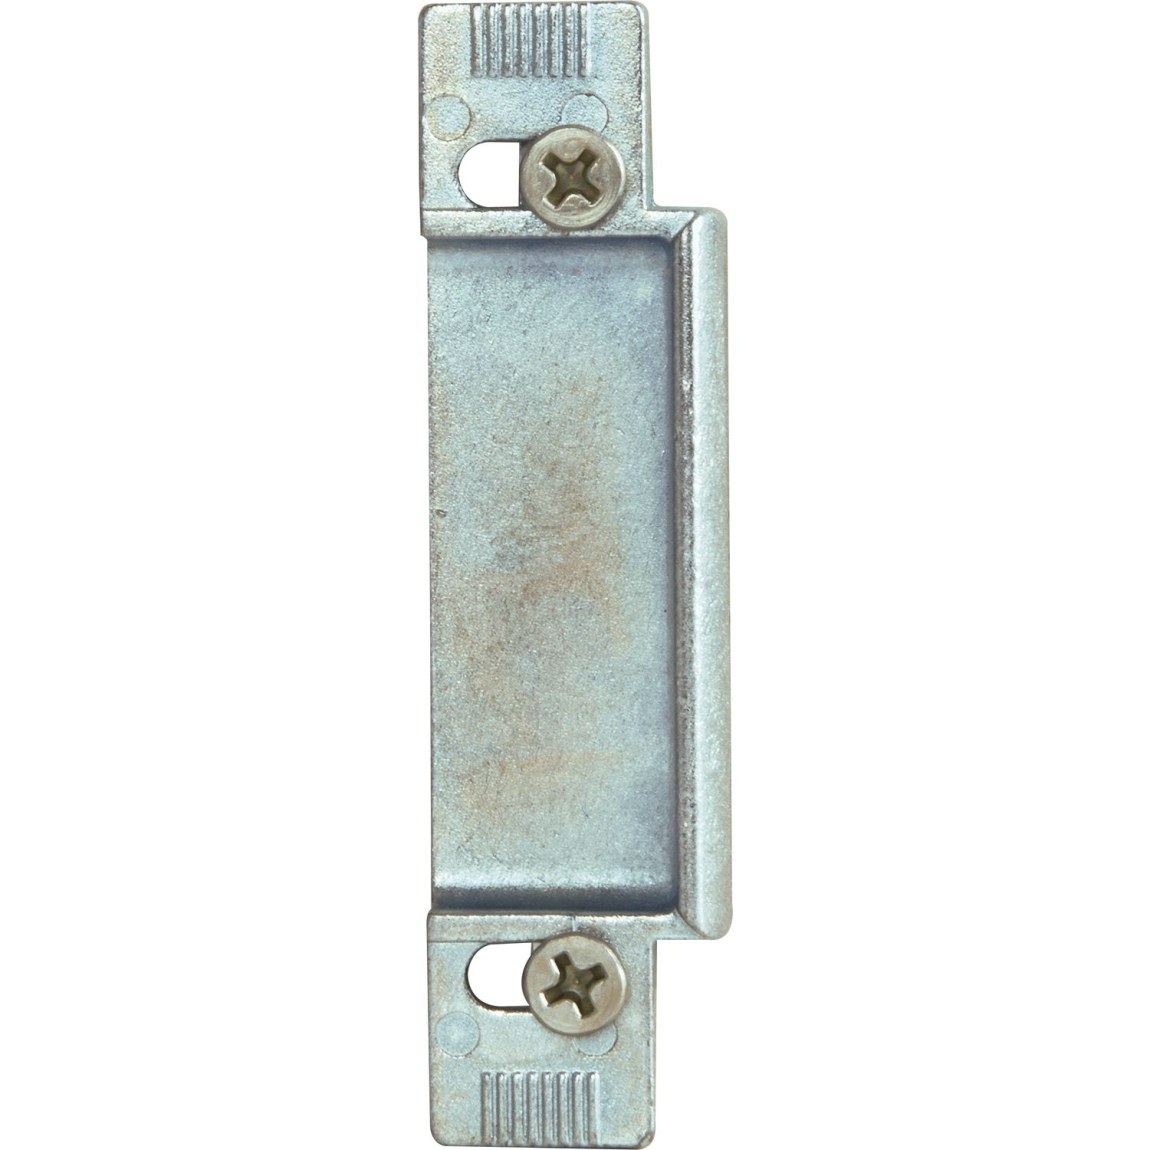 KFV výměnný kus 116, zinkový tlakový odlitek stříbrný, 8 mm - Železářství Zámky Zámky lištové, vícebodové Zámky lištové KFV a příslušenství Protiplechy pro zámky KFV